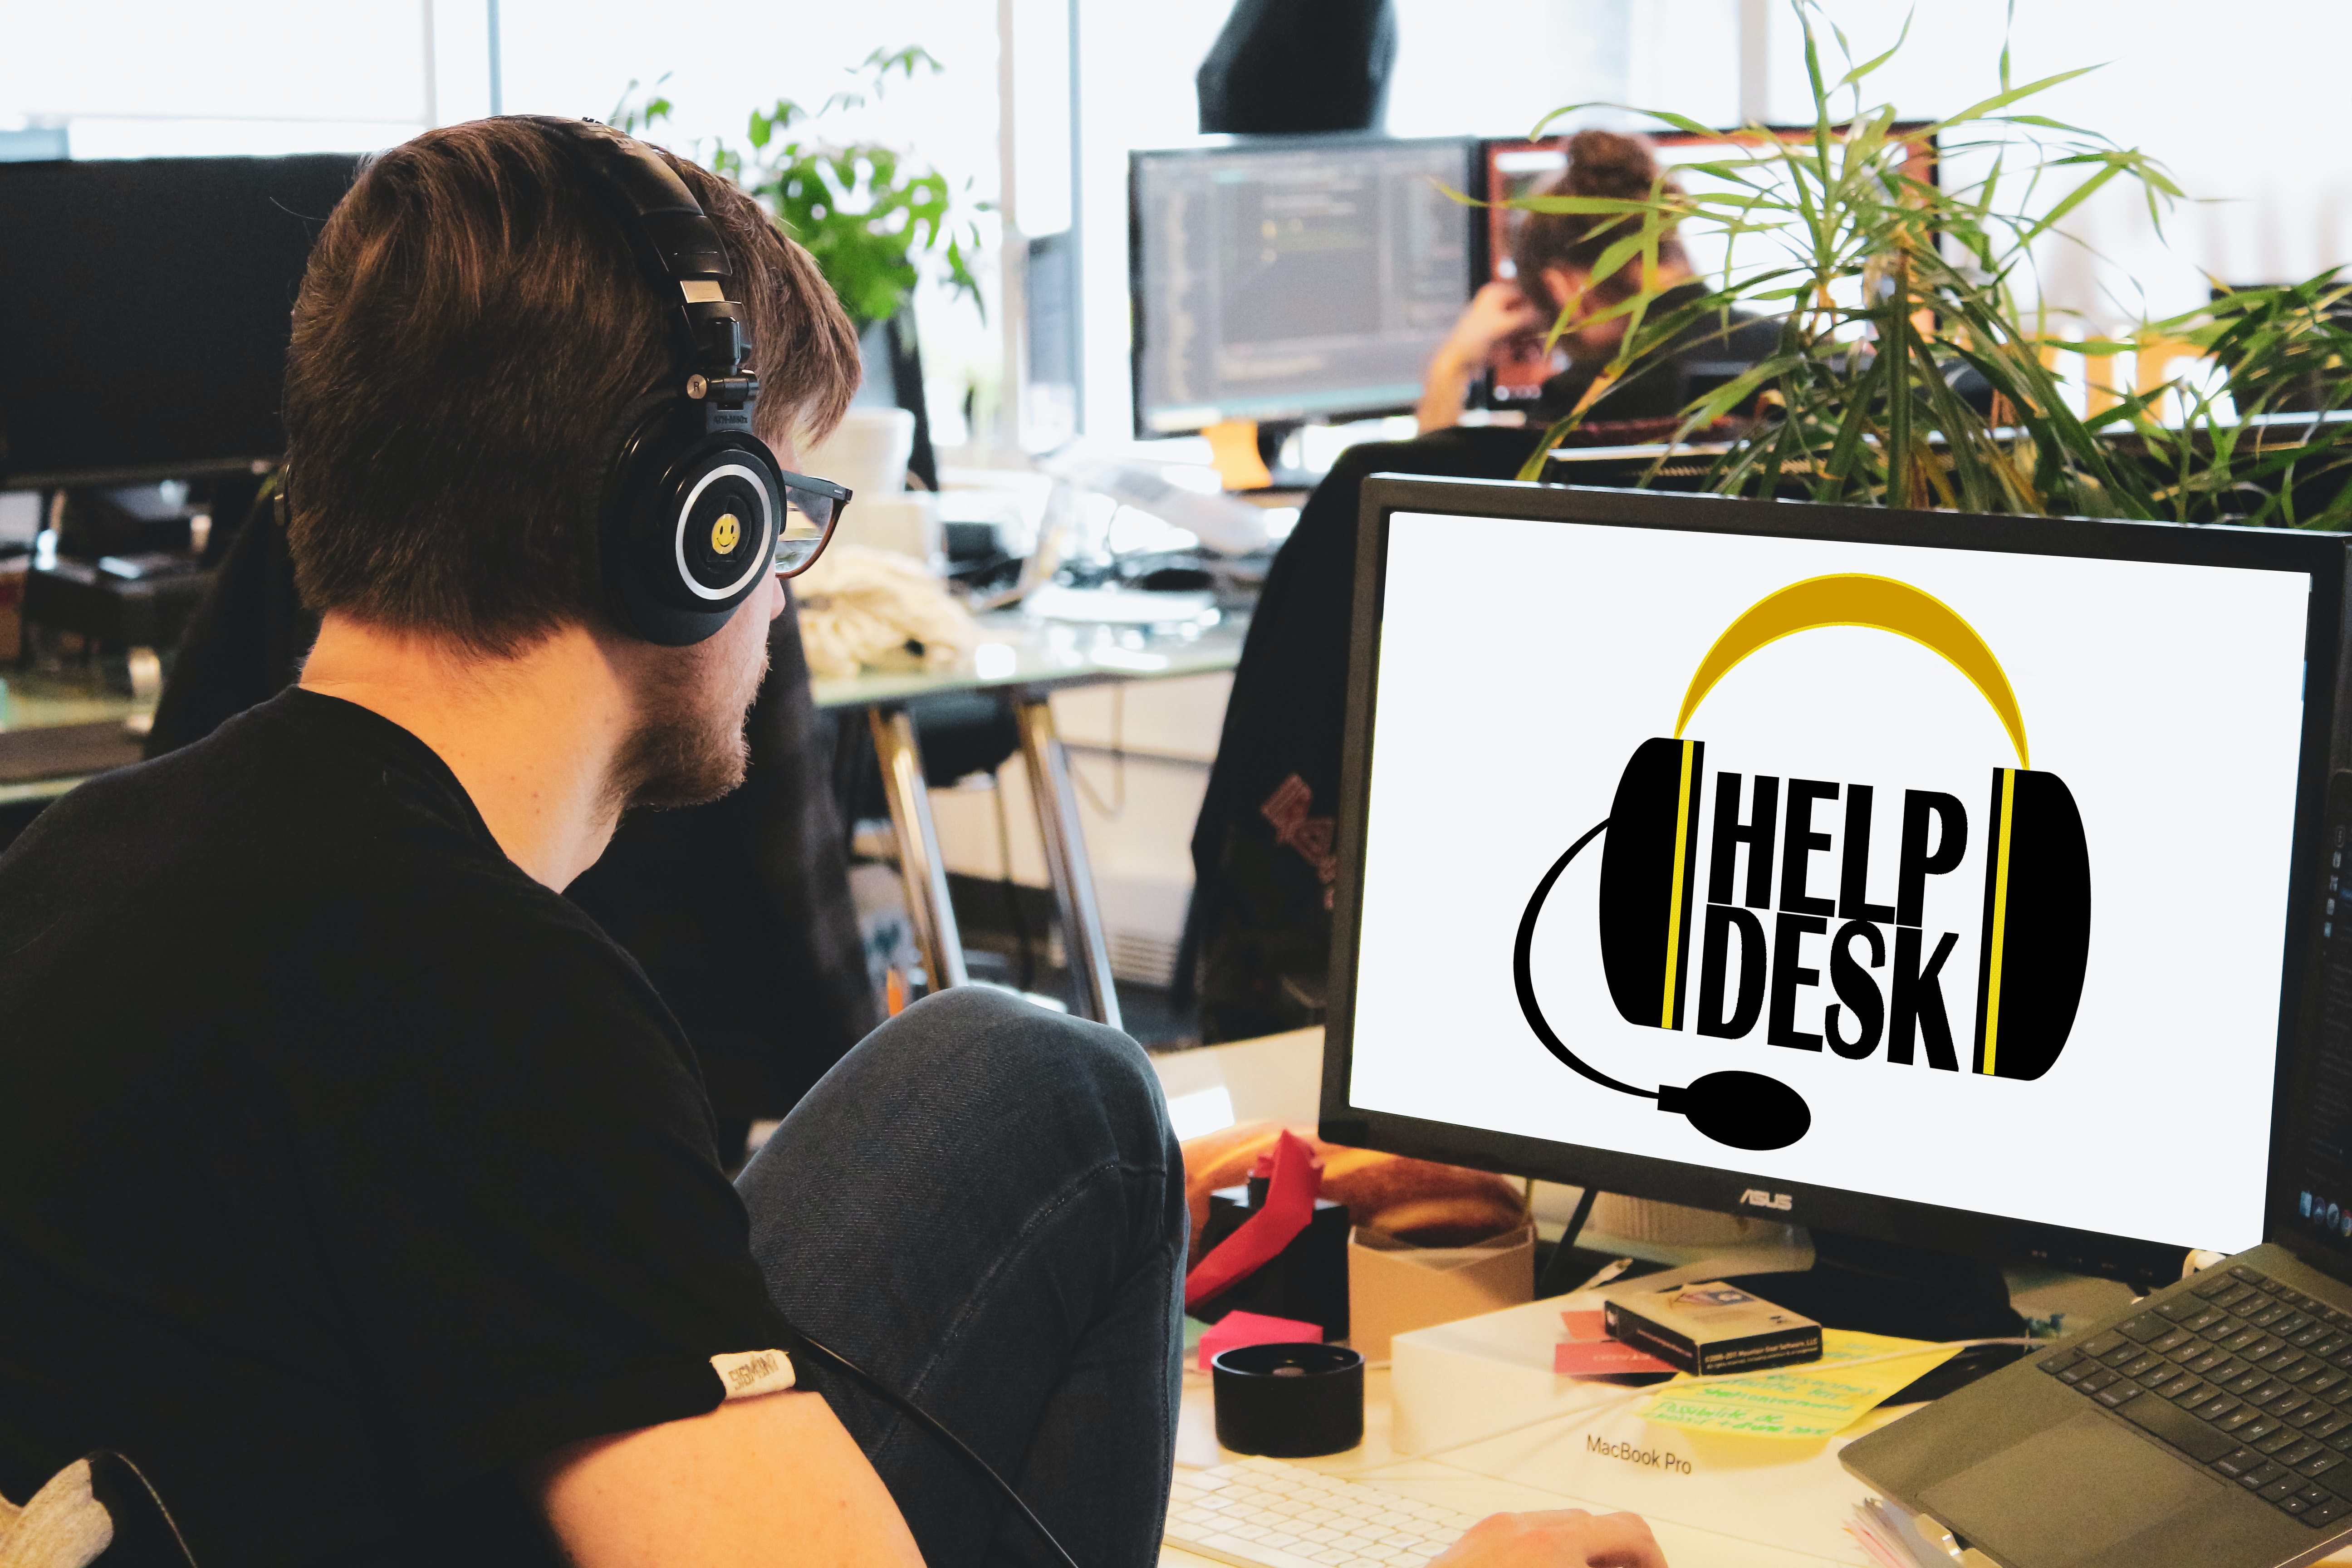 Online Help Desk